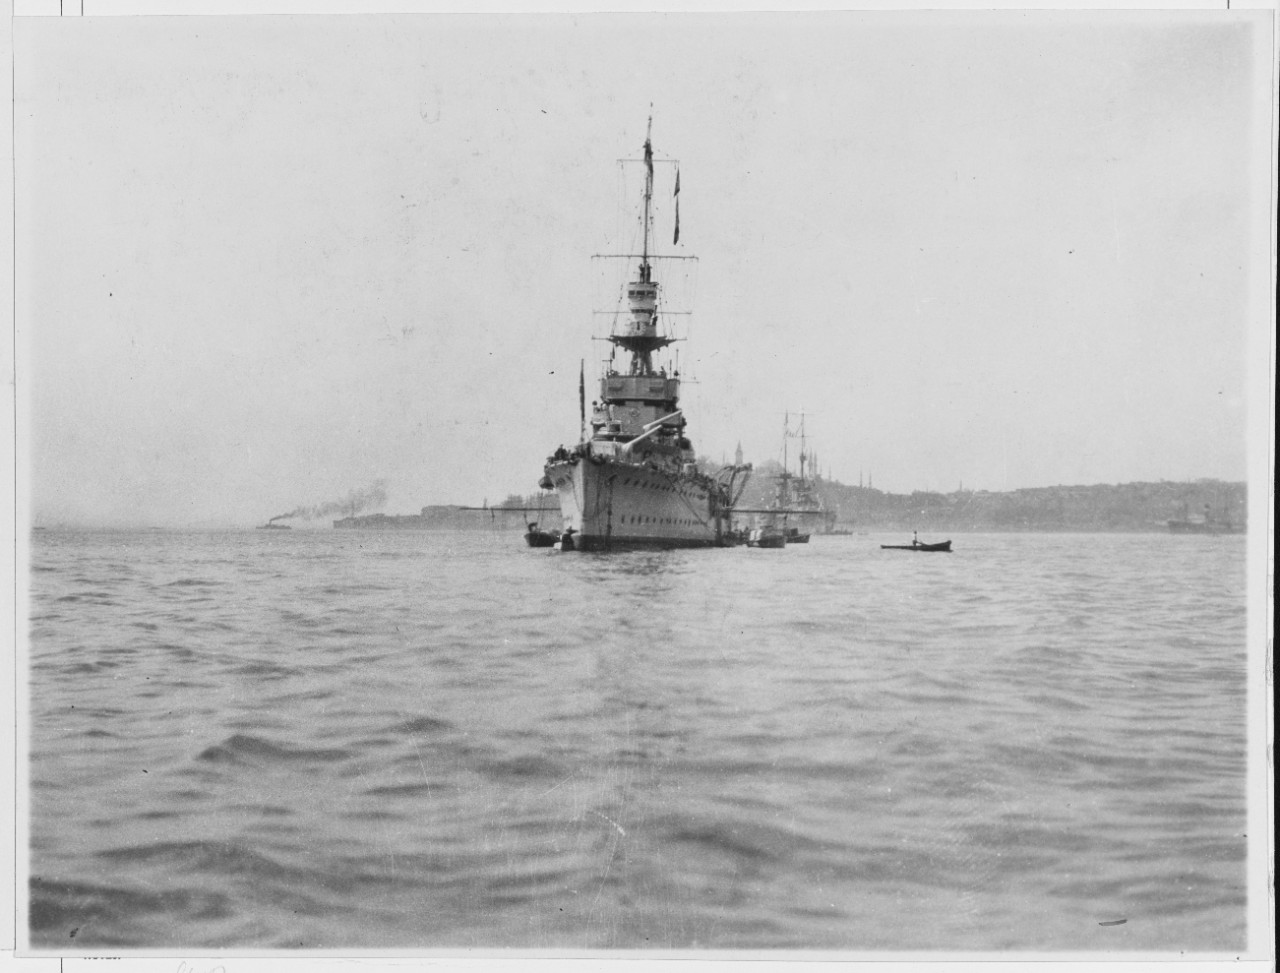 HMS CERES (British Cruiser, 1917)